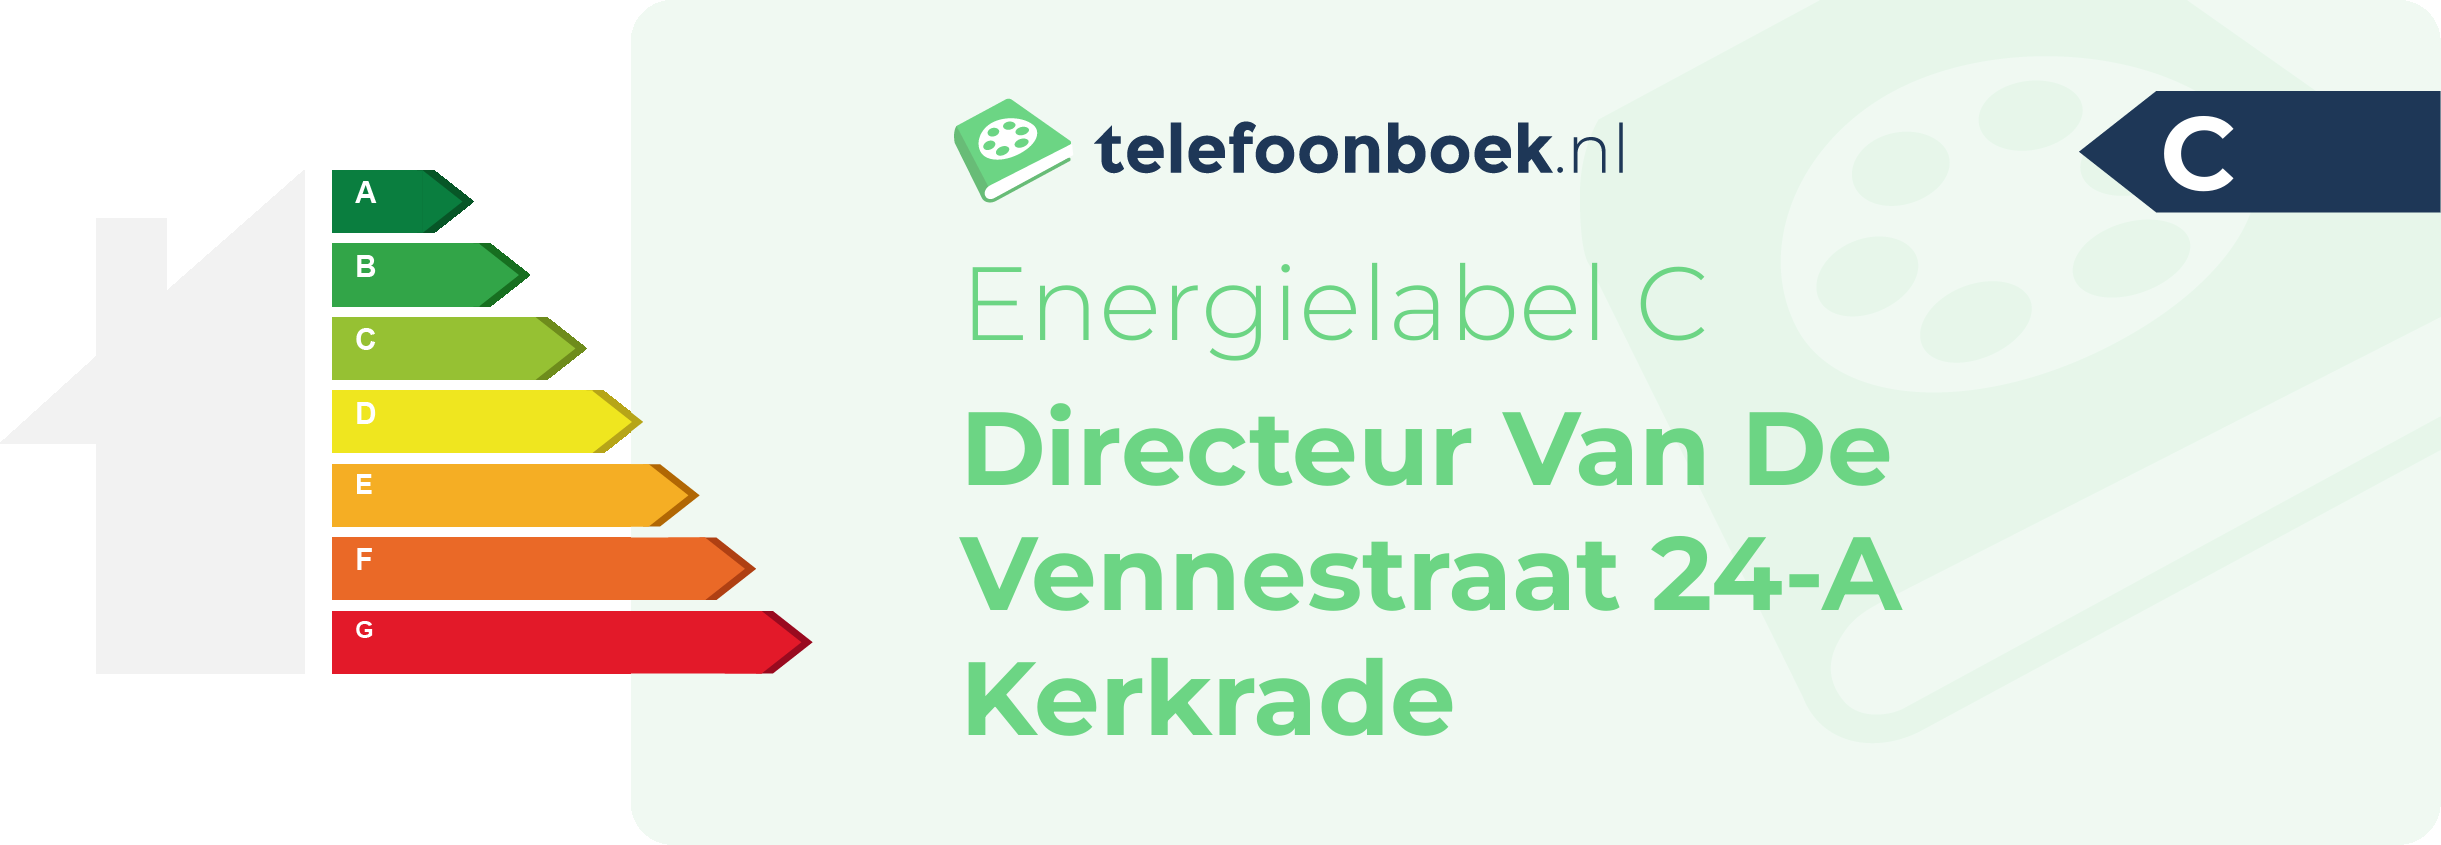 Energielabel Directeur Van De Vennestraat 24-A Kerkrade